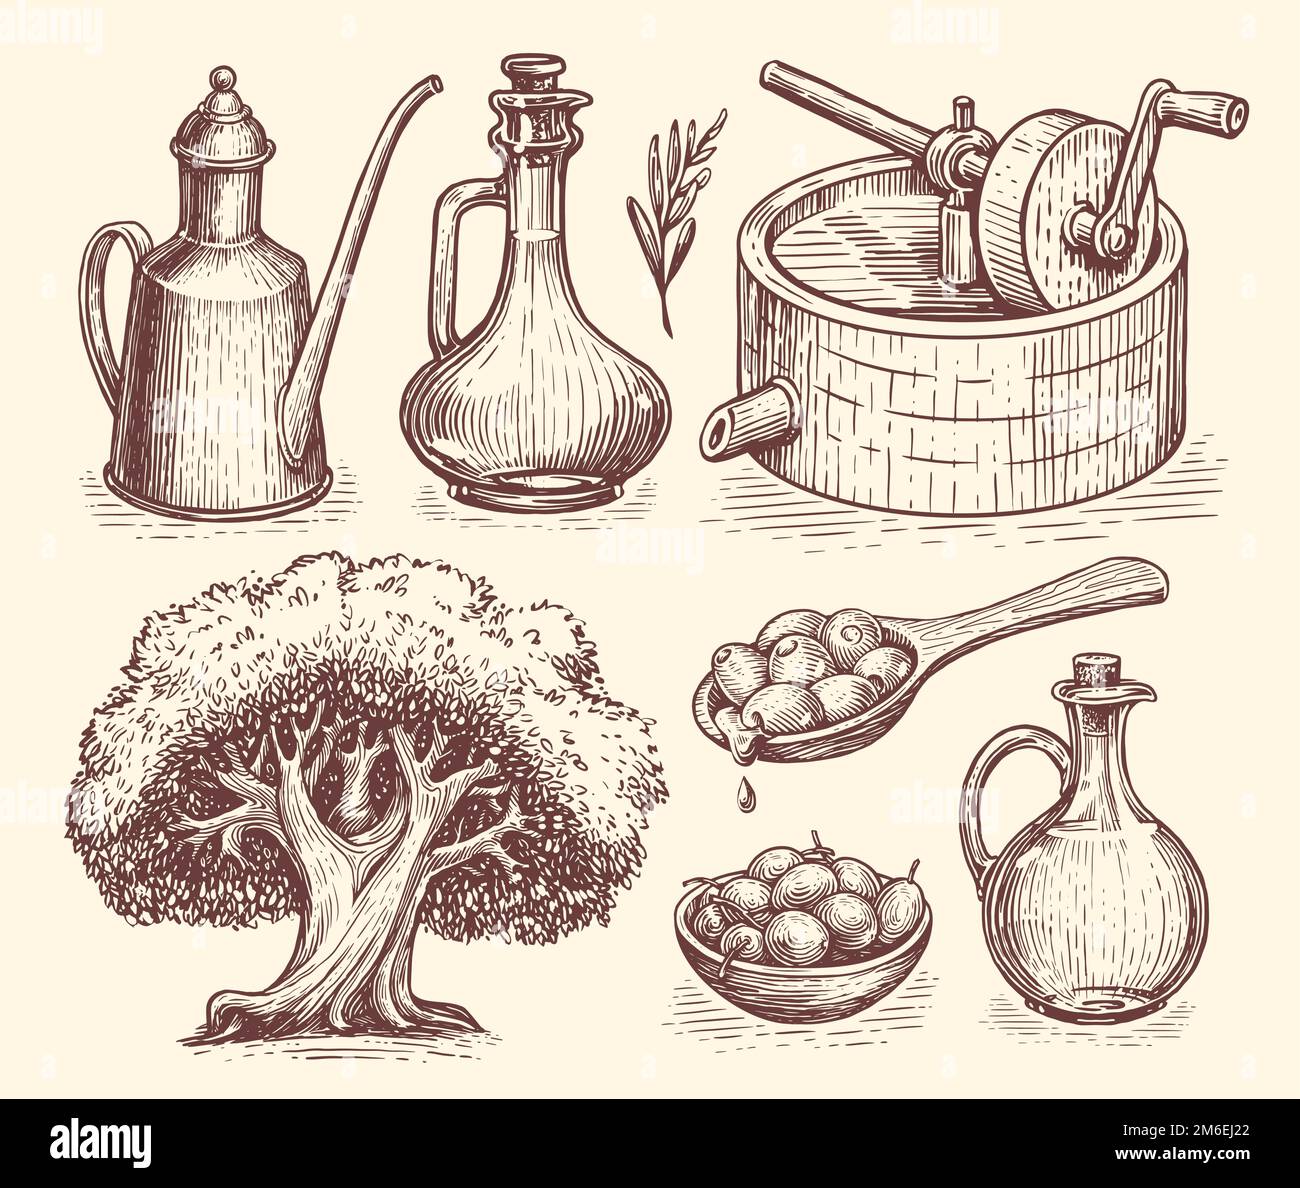 Concept de production d'huile d'olive. Alimentation naturelle saine de la ferme biologique. Croquis vectoriels dessinés à la main dans un style de gravure vintage Illustration de Vecteur